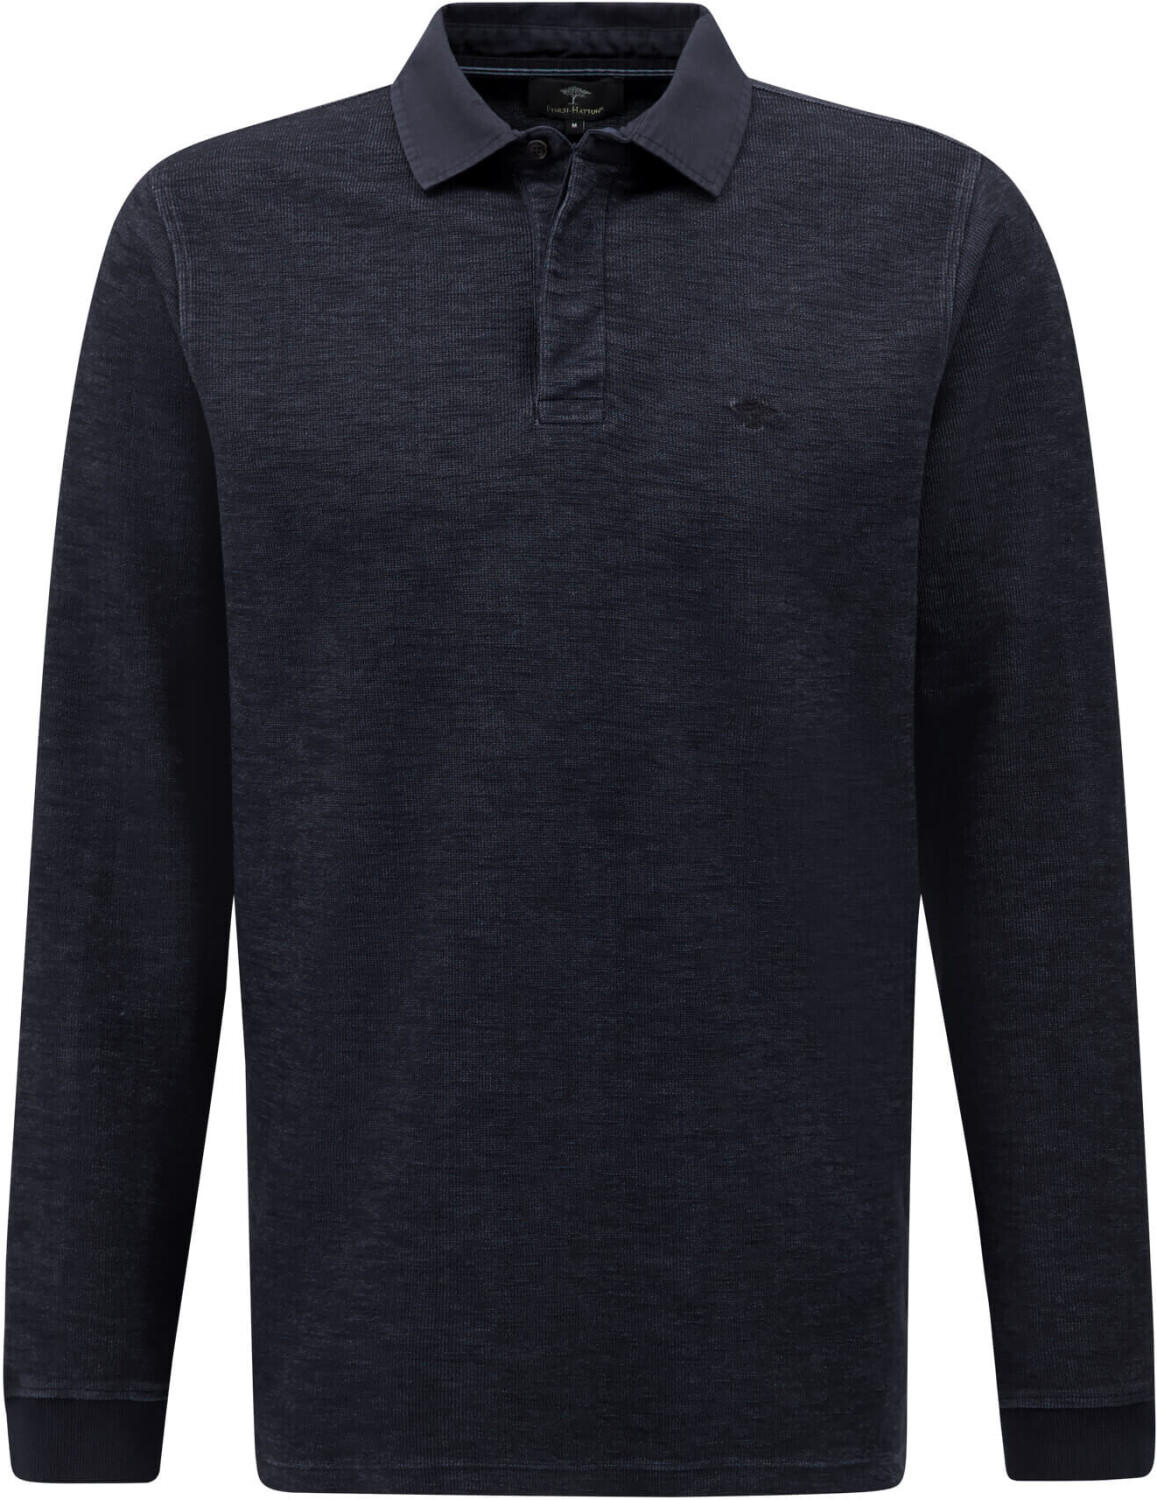 Fynch-Hatton Rugby-Shirt, Garment Dyed (13071271-685) navy ab 40,00 € |  Preisvergleich bei